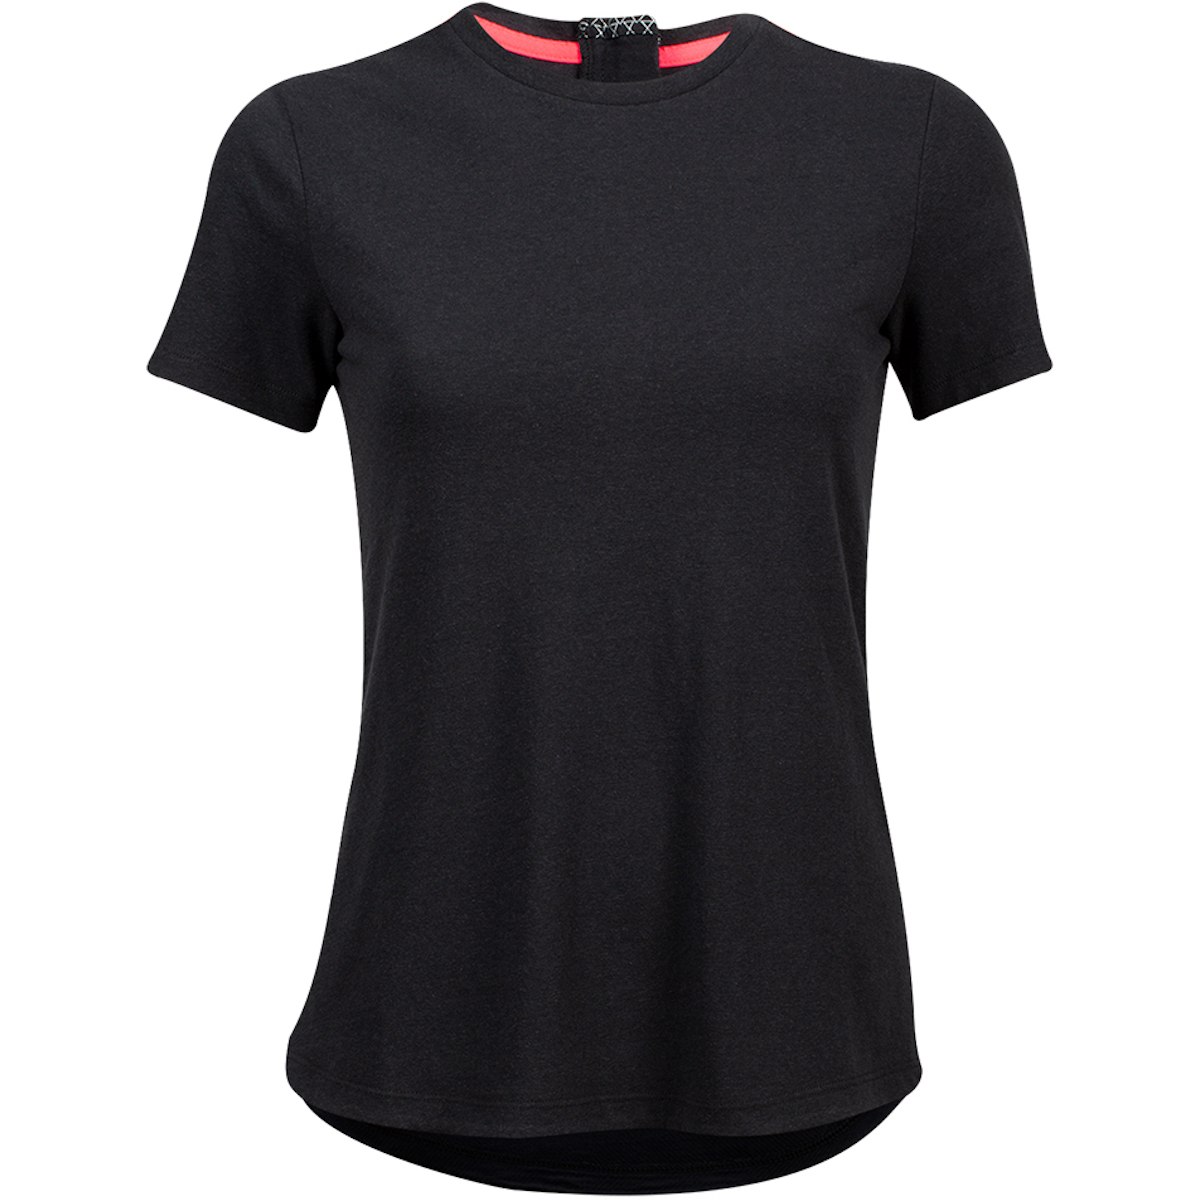 Produktbild von PEARL iZUMi Elite Scape T-Shirt Damen 17222002 - schwarz - 021